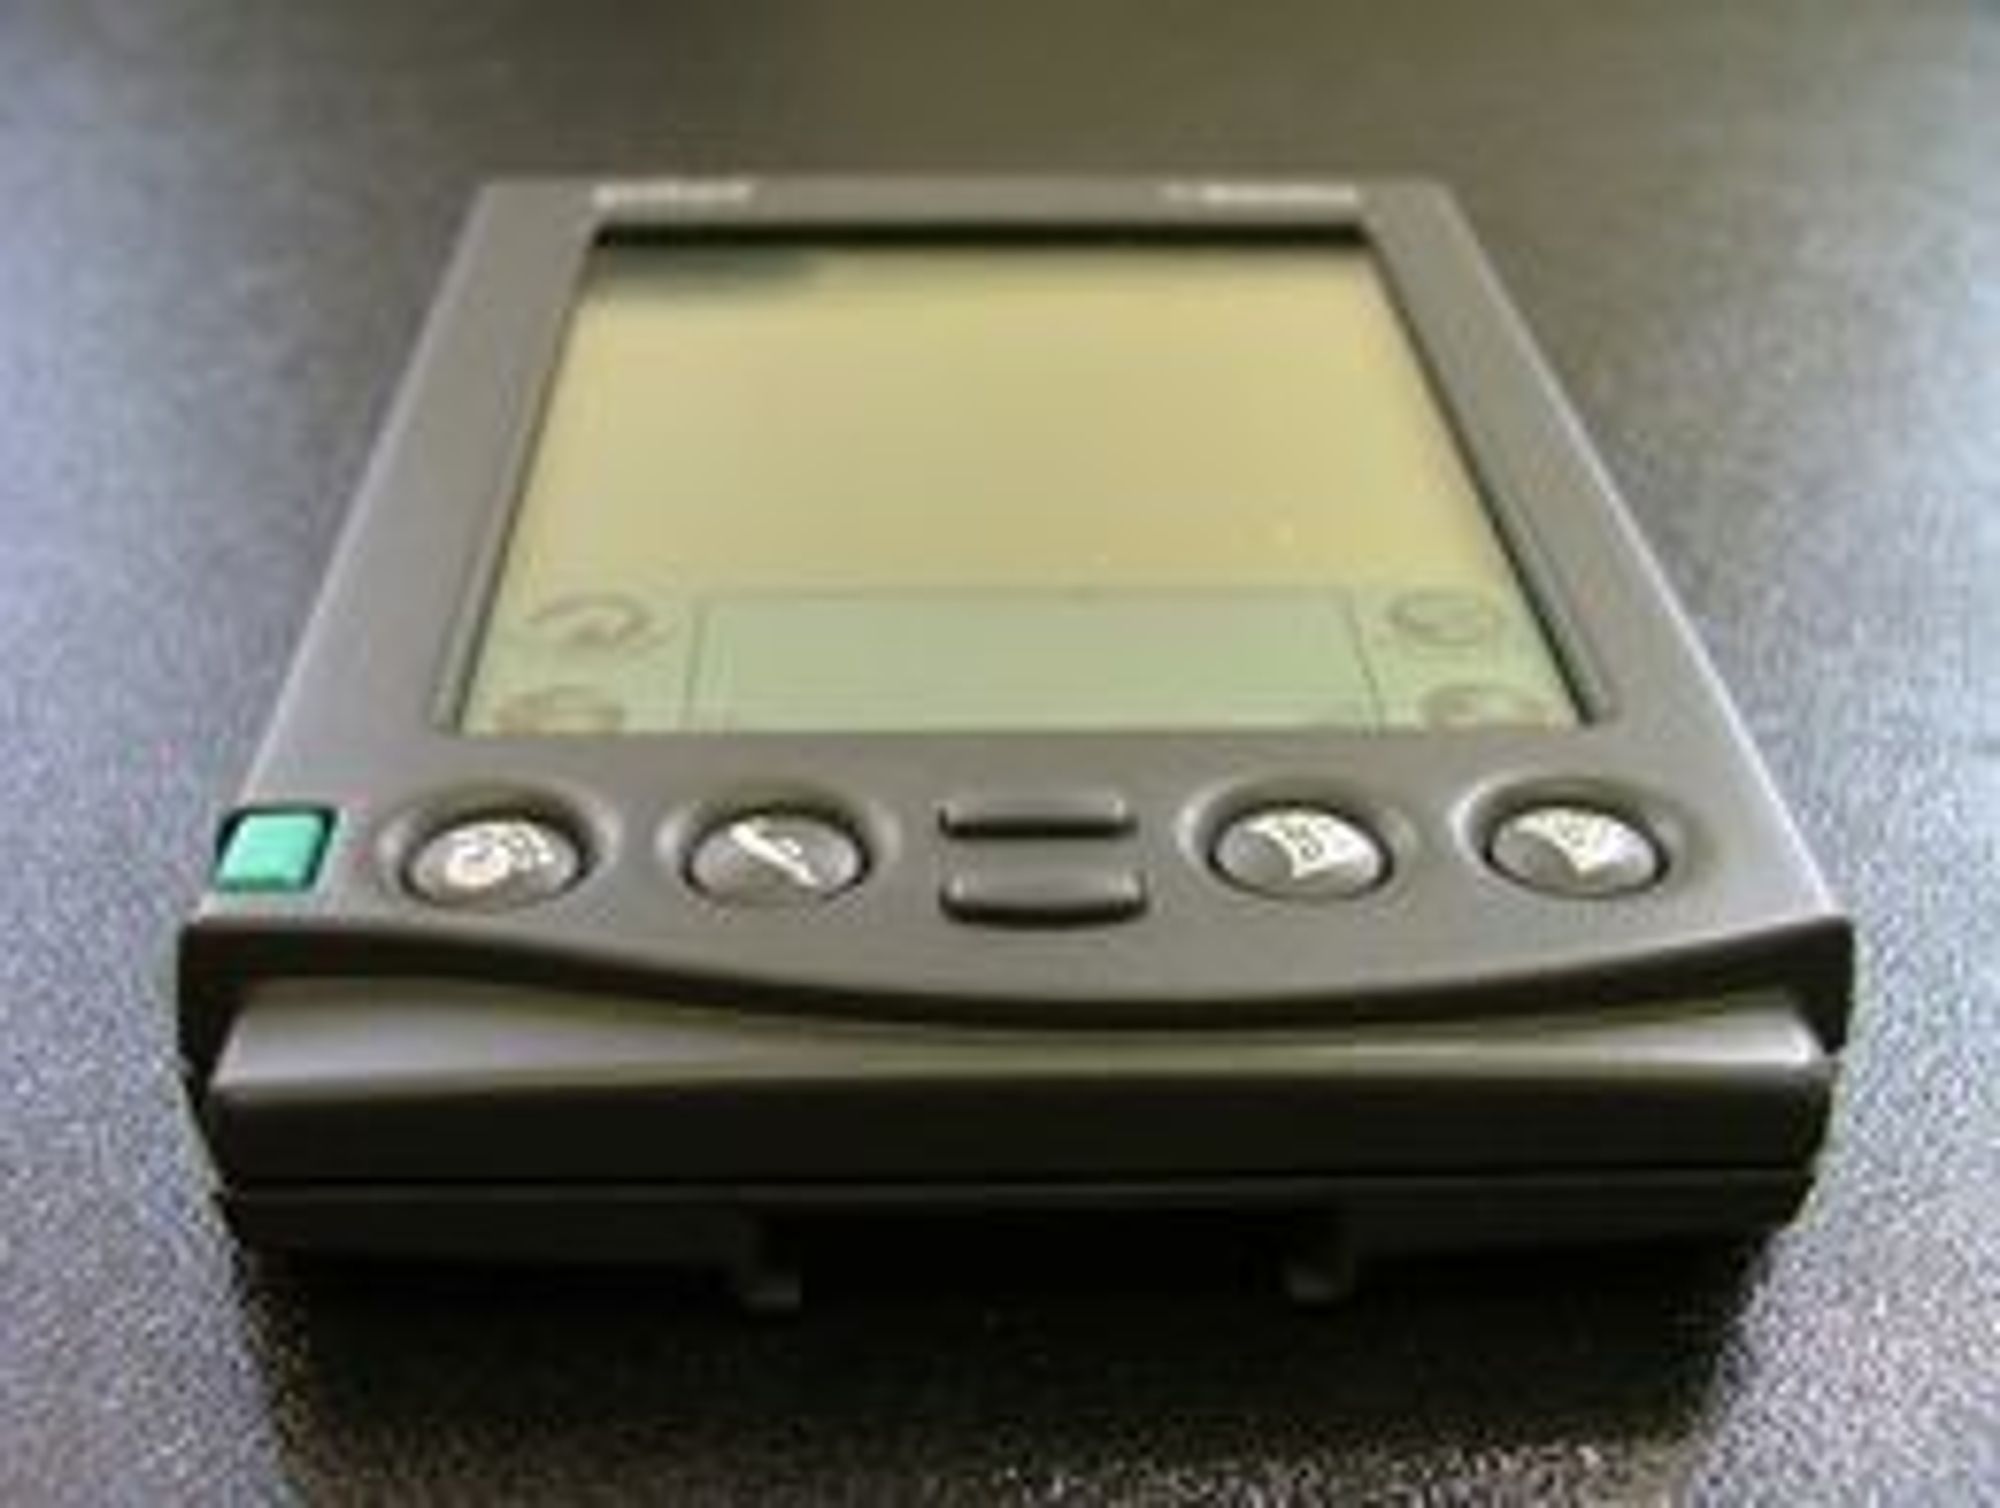 ORIGINALEN: Palm Pilot slik den fremsto i begynnelsen i 1996. Apple prøvde seg med sin Newton, men det var Palm som lykkes skape et helt nytt marked - som de dominerte fullstendig i flere år.